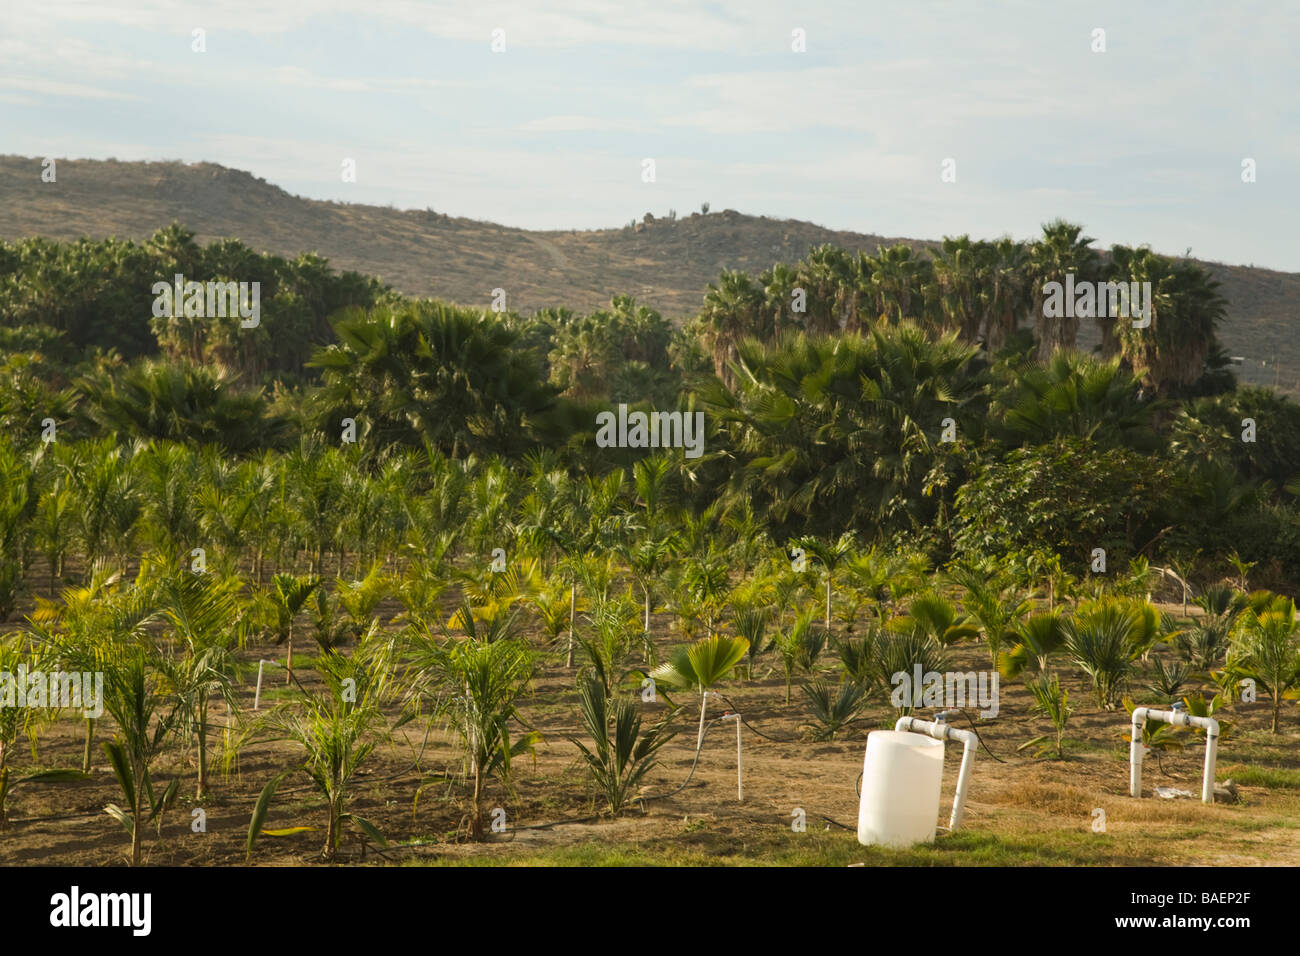 Mexiko Todos Santos Reihen von bewässerten Palmen wachsen in Pflanze Kindergärten Feld Sierra Laguna Mountains in Ferne Stockfoto